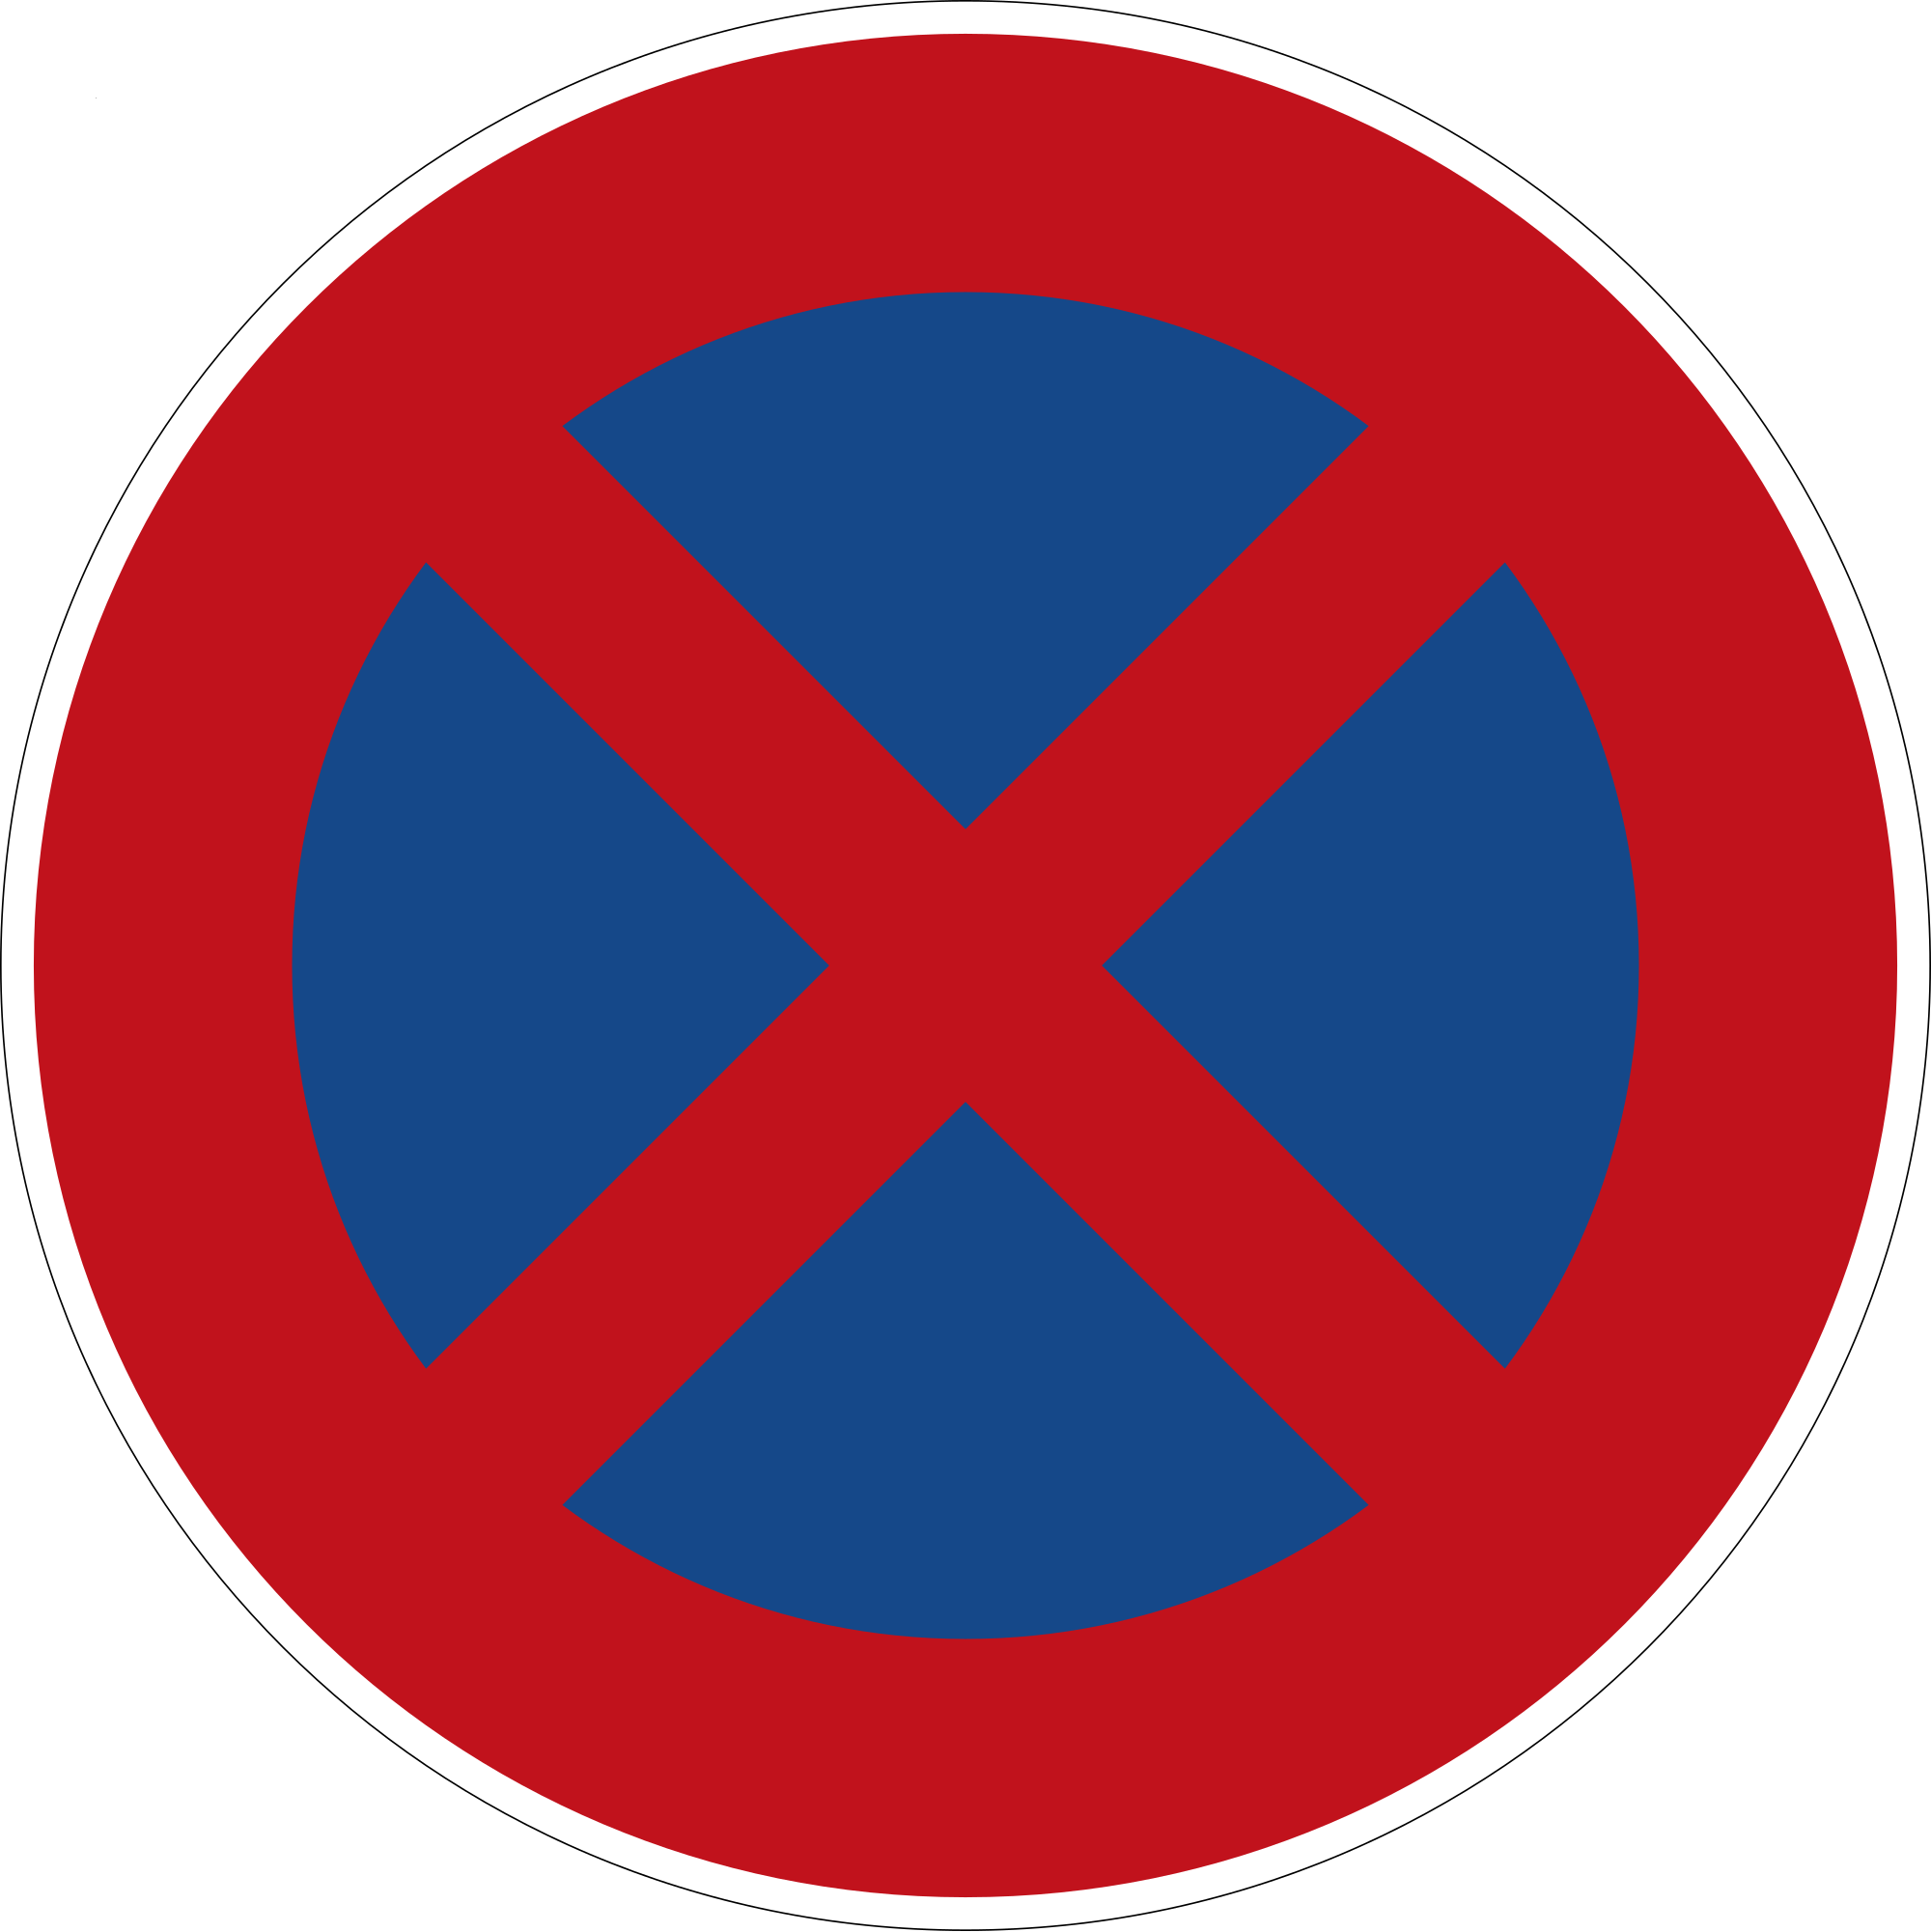 verkehrszeichen der stvo - Verkehrszeichen der